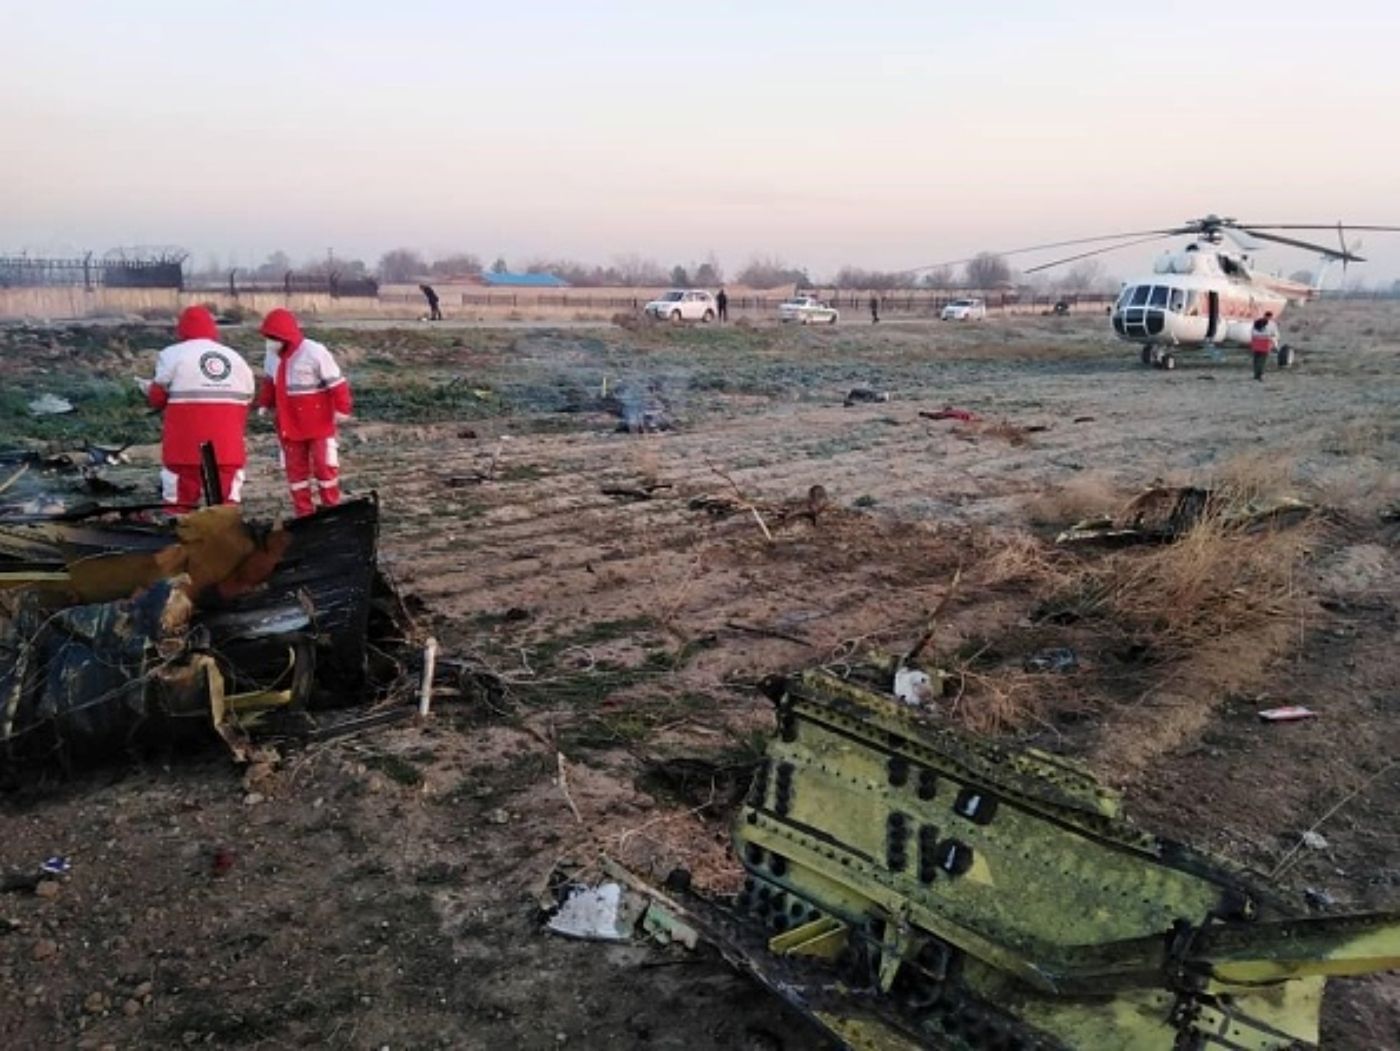 Zdjęcie z miejsca katastrofy samolotu ukraińskich linii lotniczych